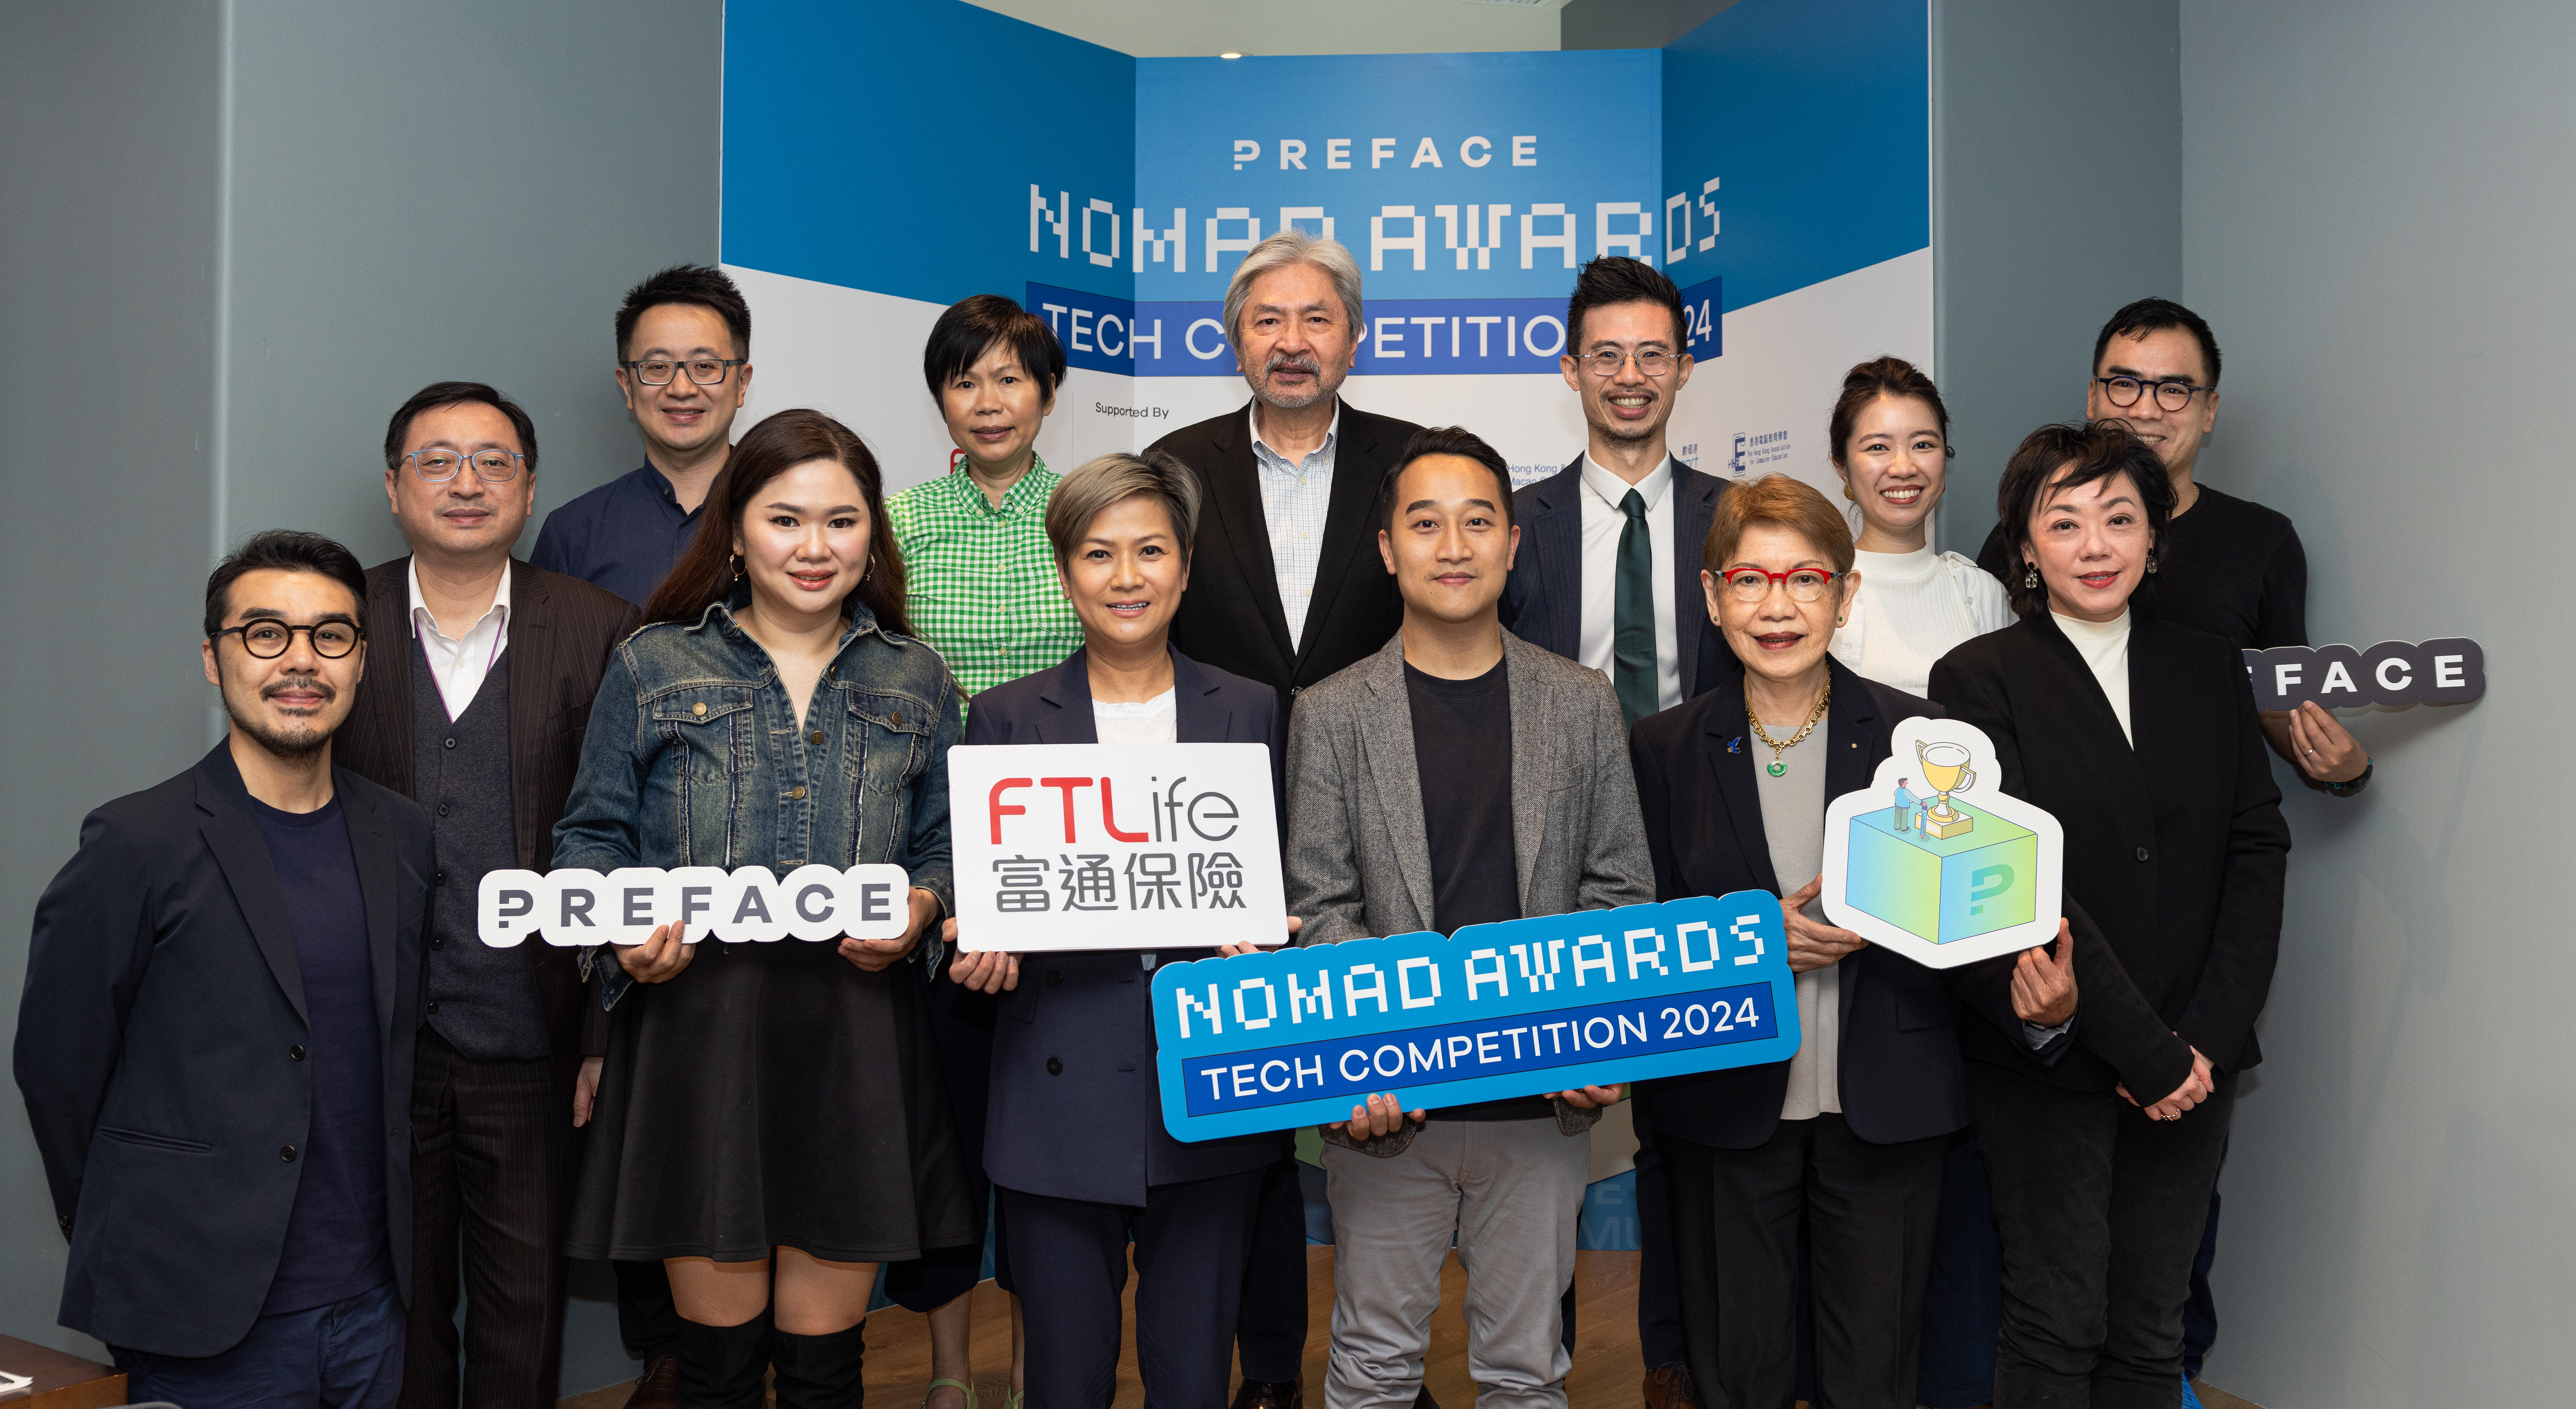 首個港澳及大灣區年度科技應用競賽《Nomad Awards》